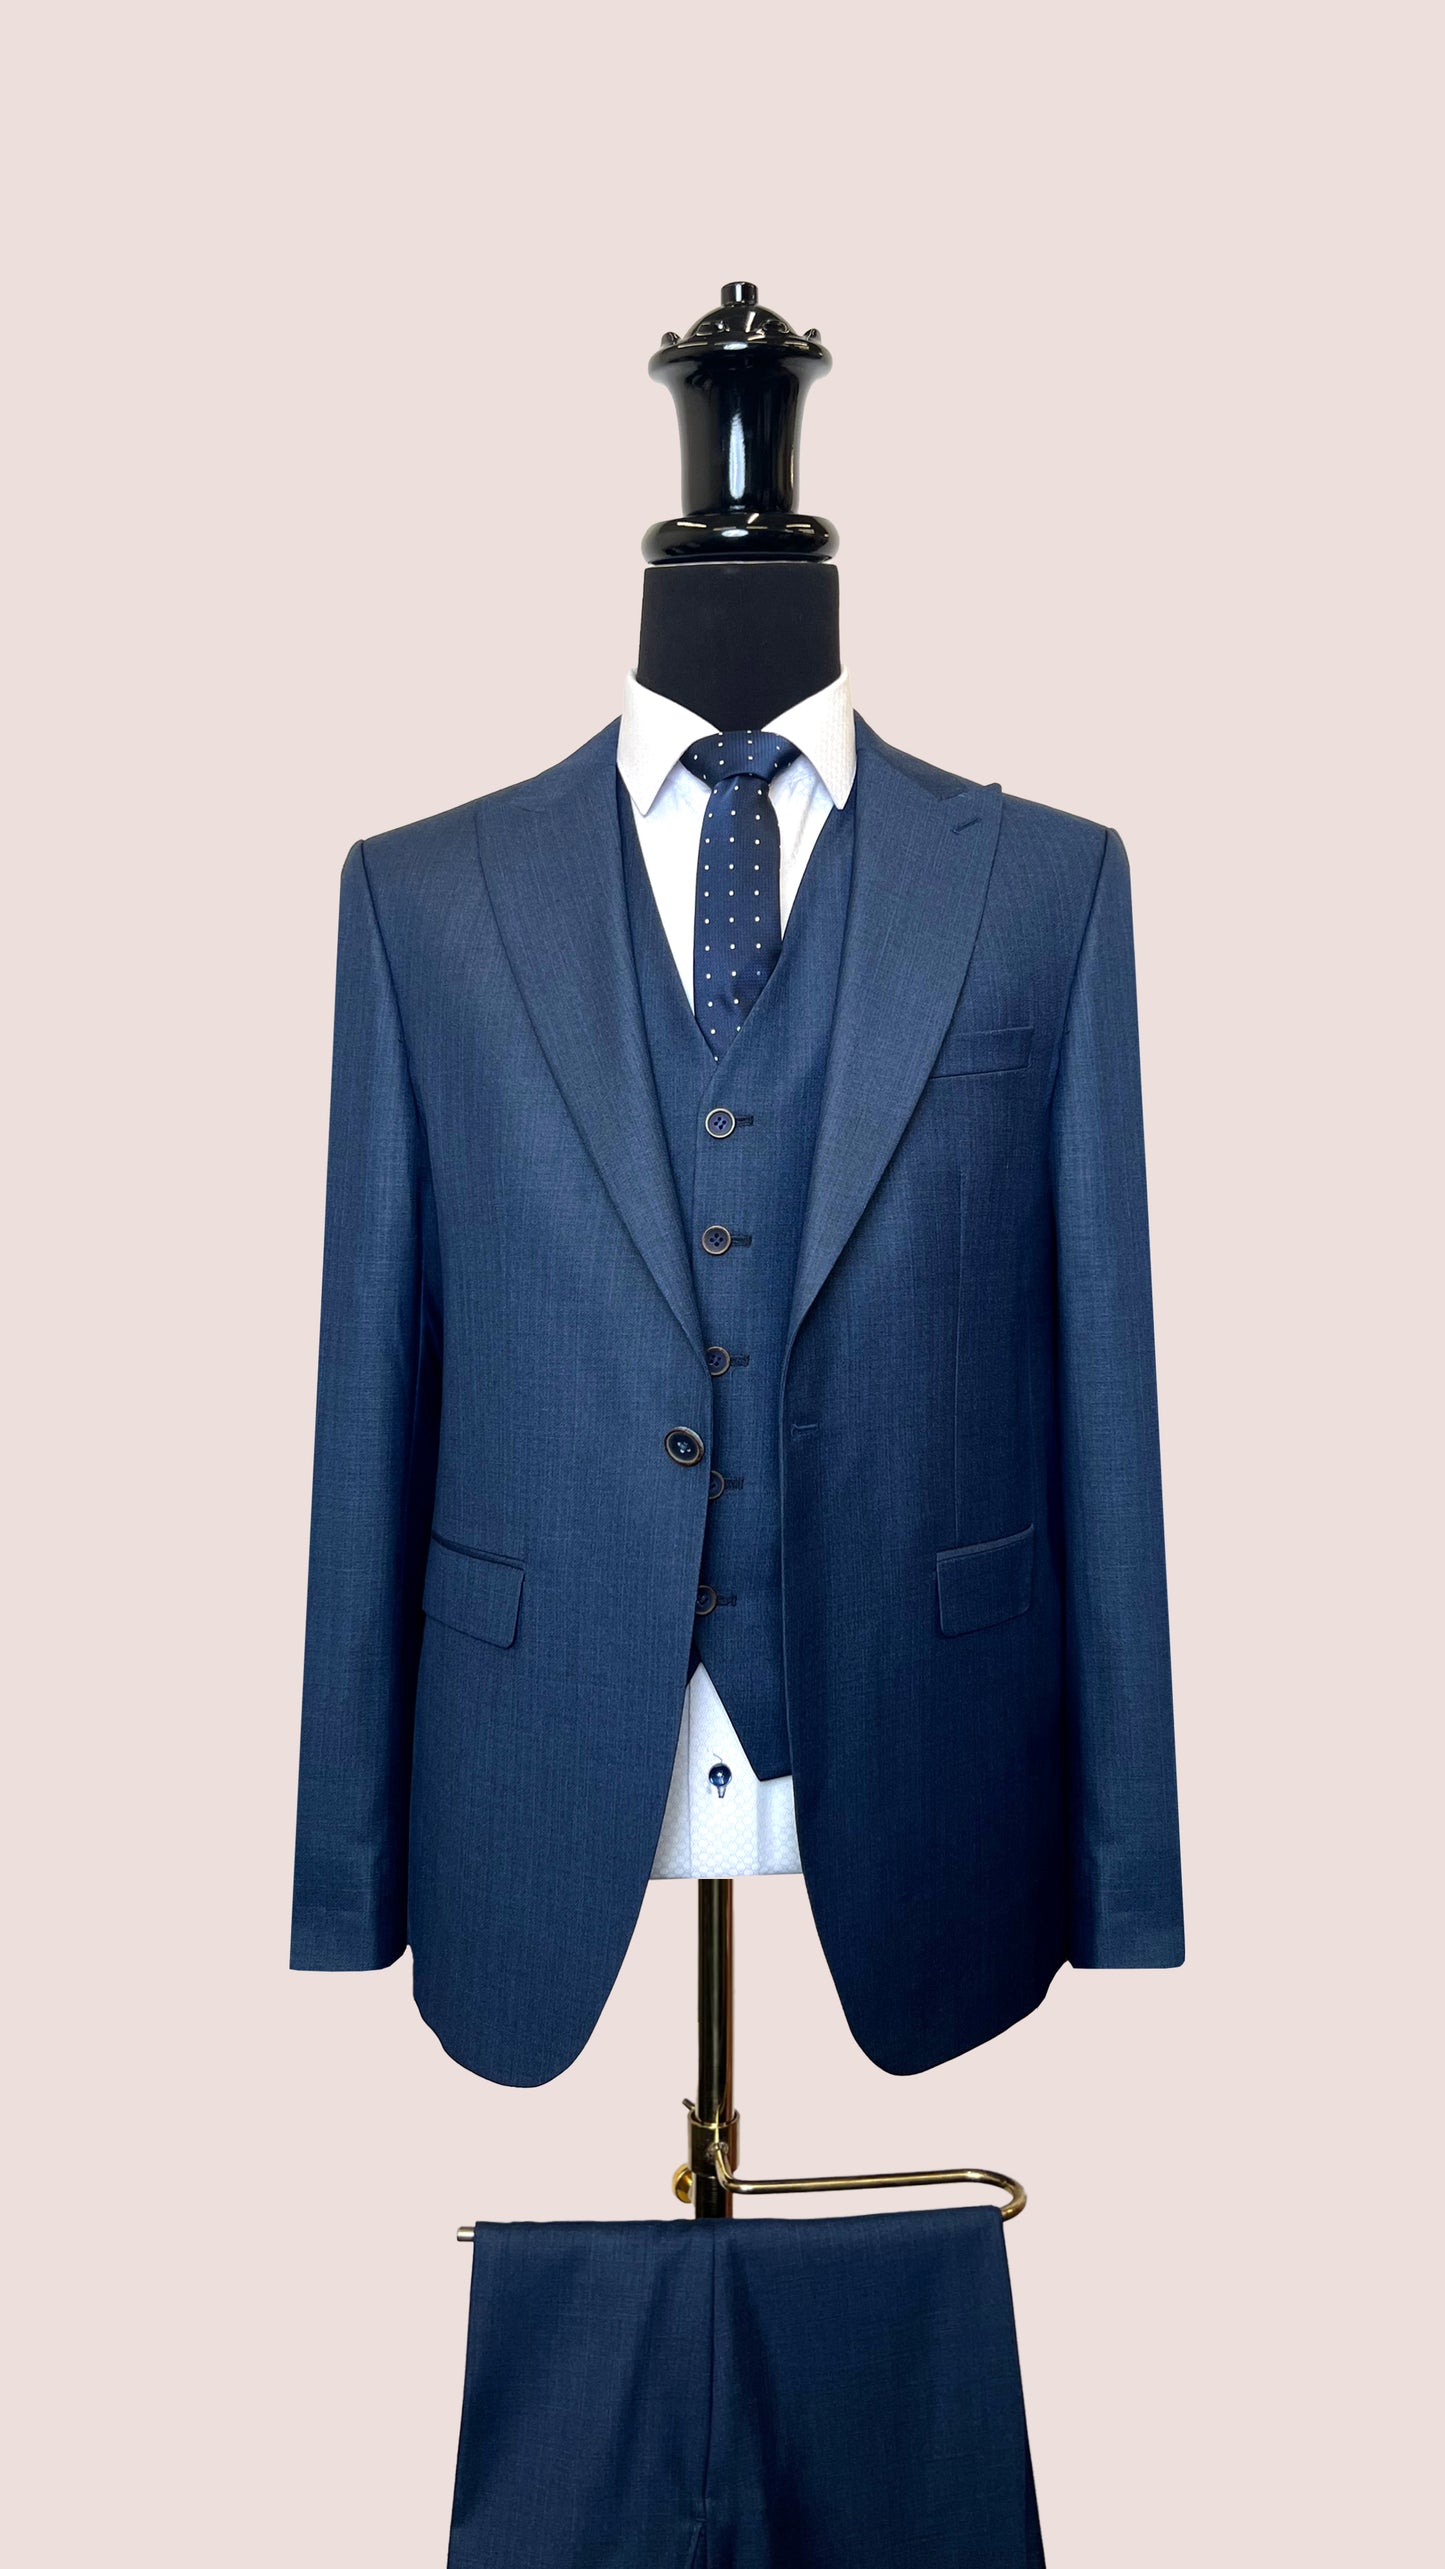 Vercini 3-Piece Classy Men's Business Suit with Reversible Vest SUITS 3 Piece Suits Vercini